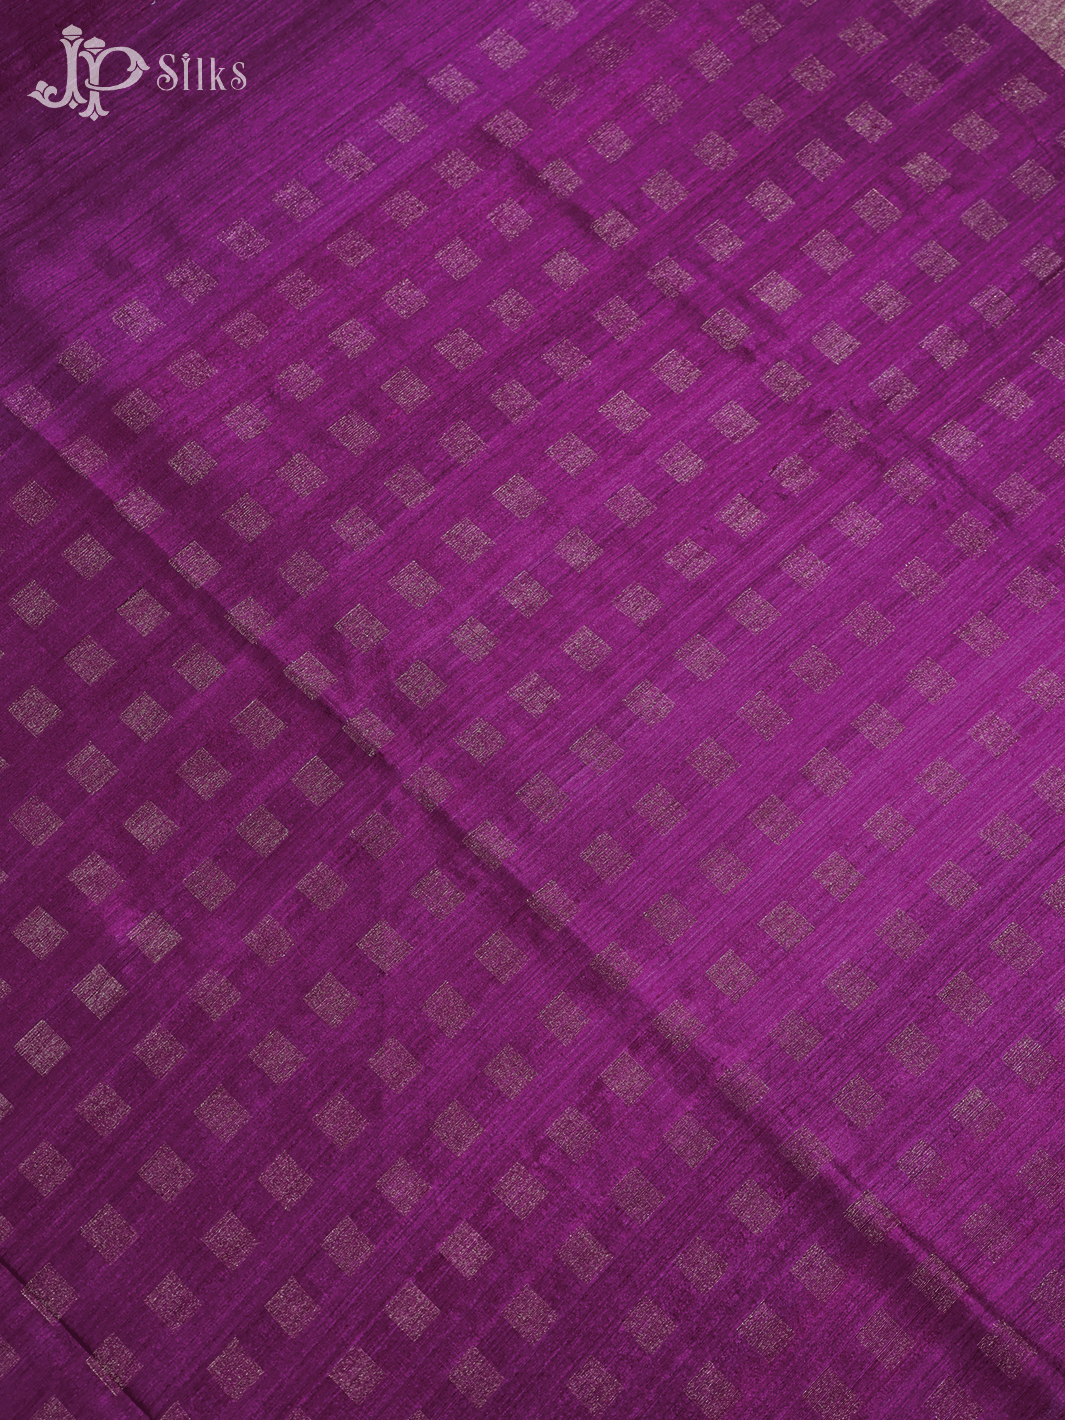 Magenta Tussar Silk Saree - A6433 - View 4